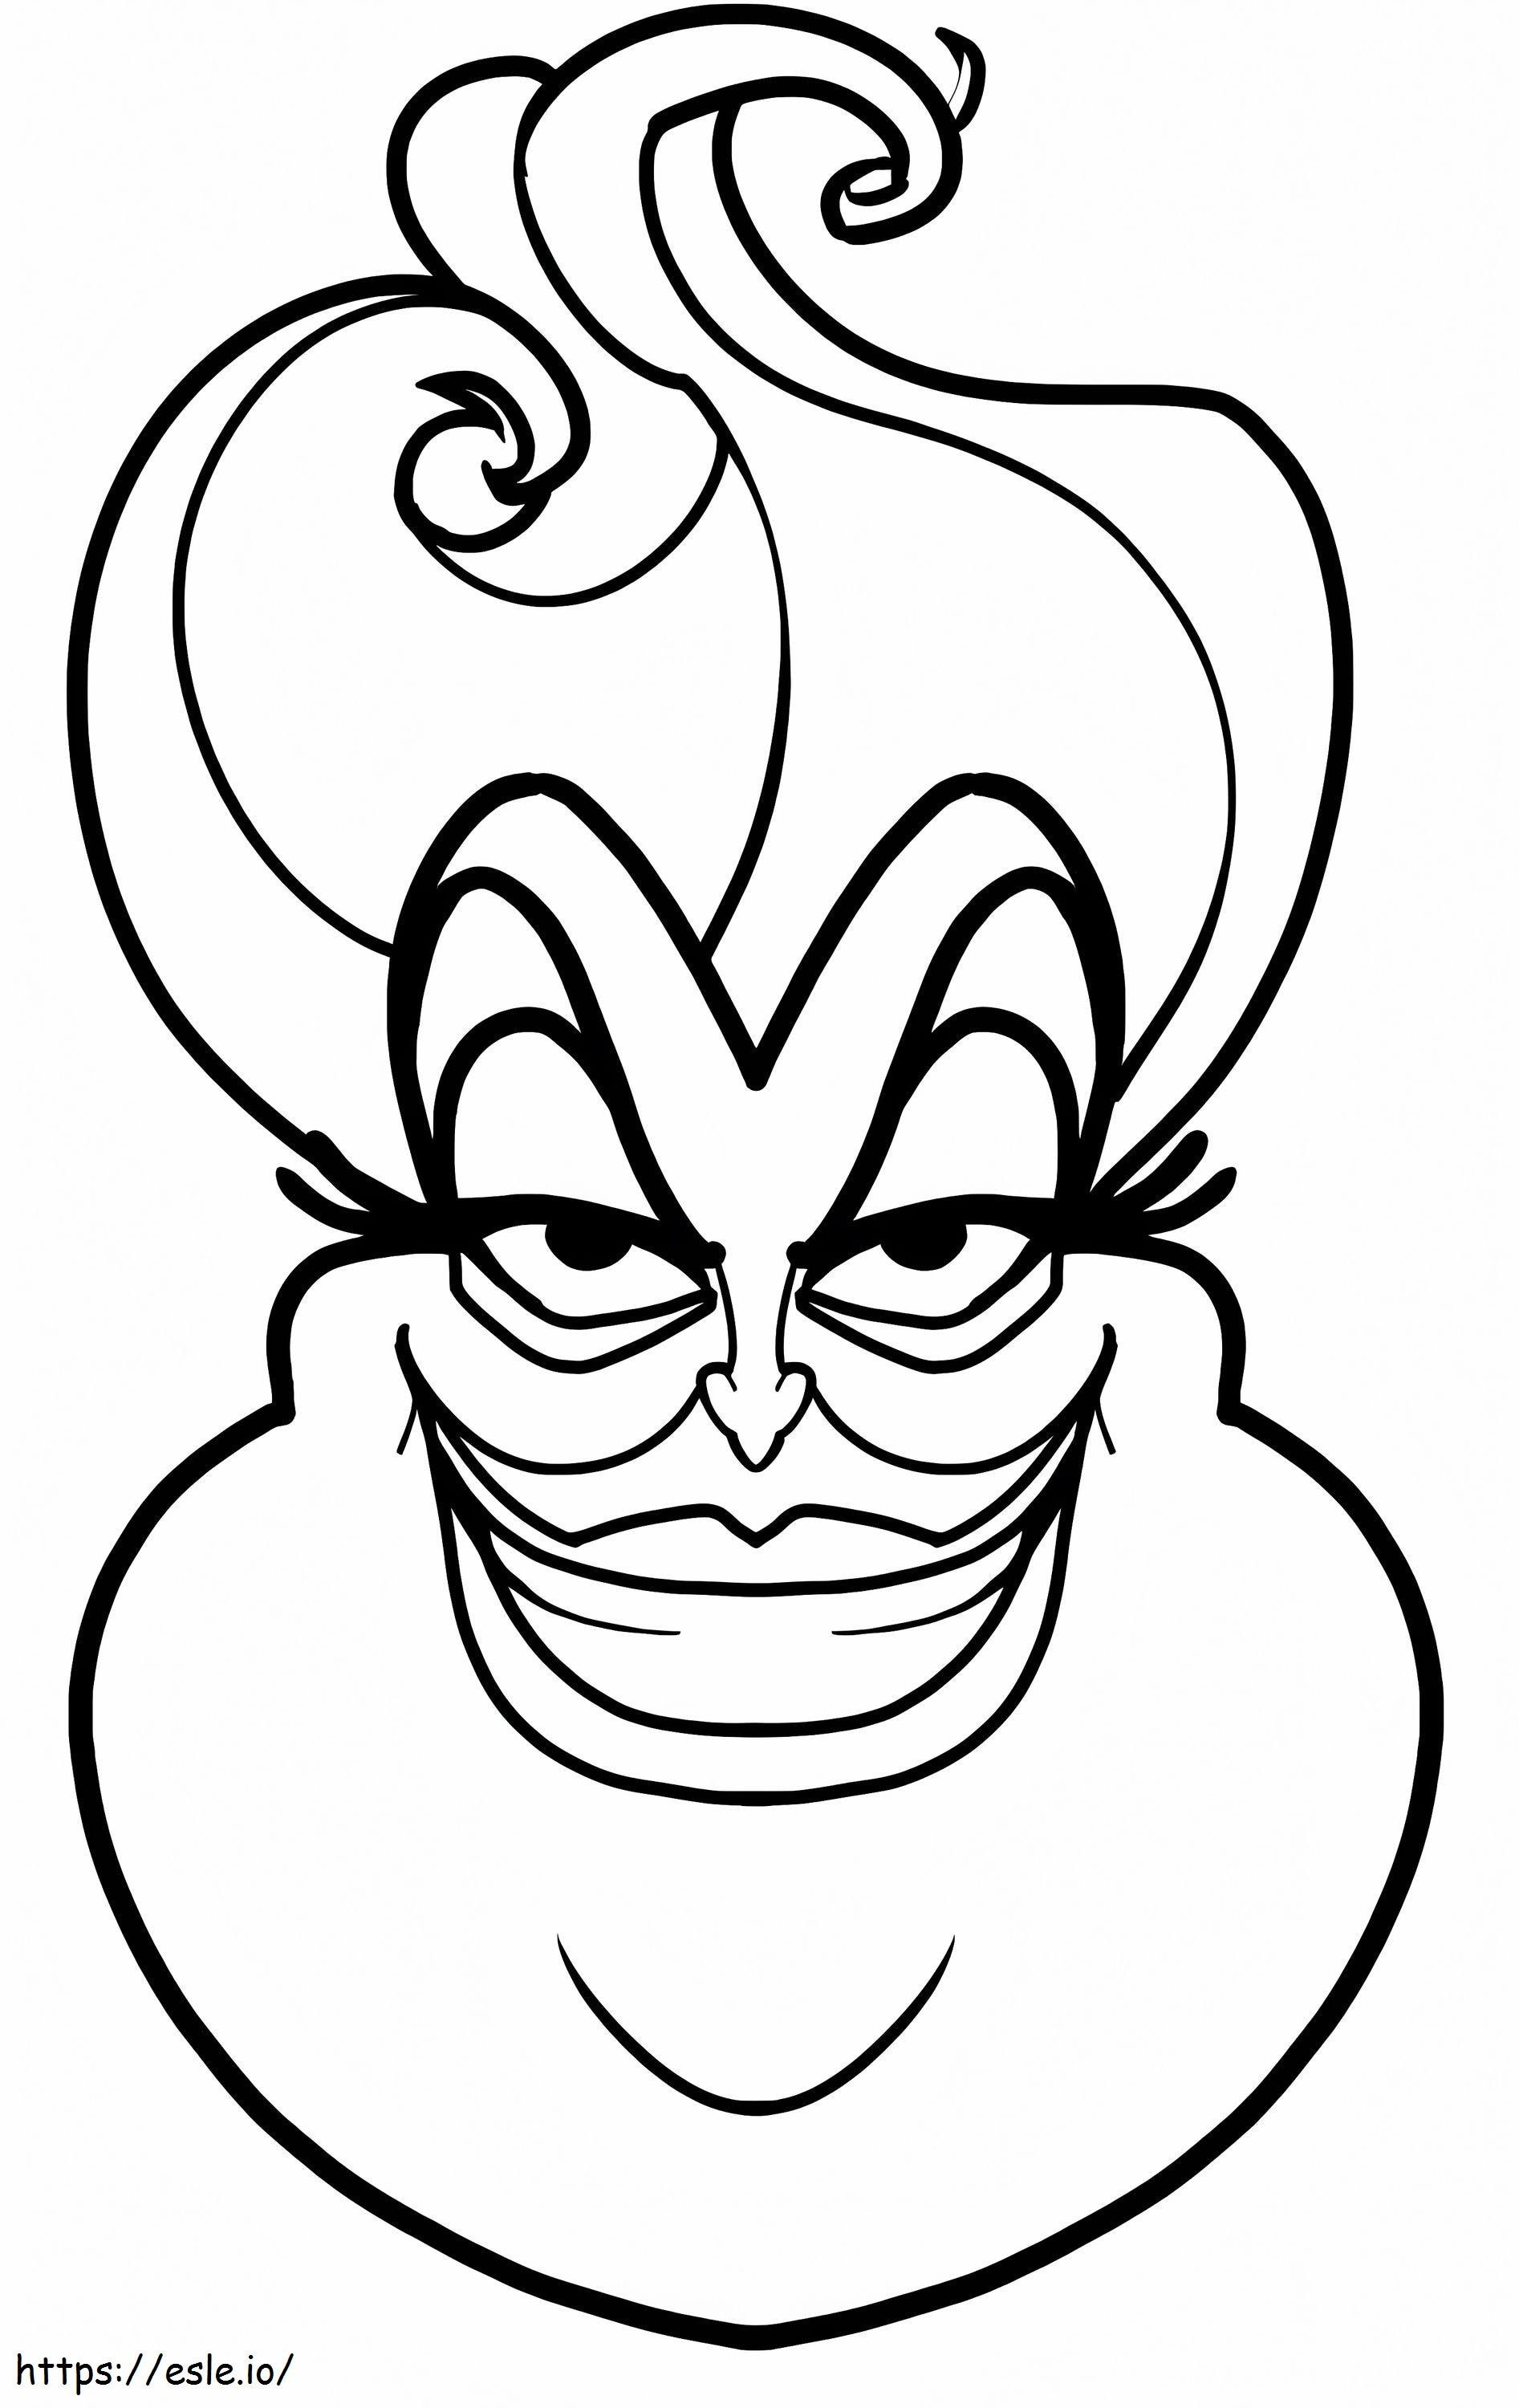 Böses Gesicht Ursula ausmalbilder